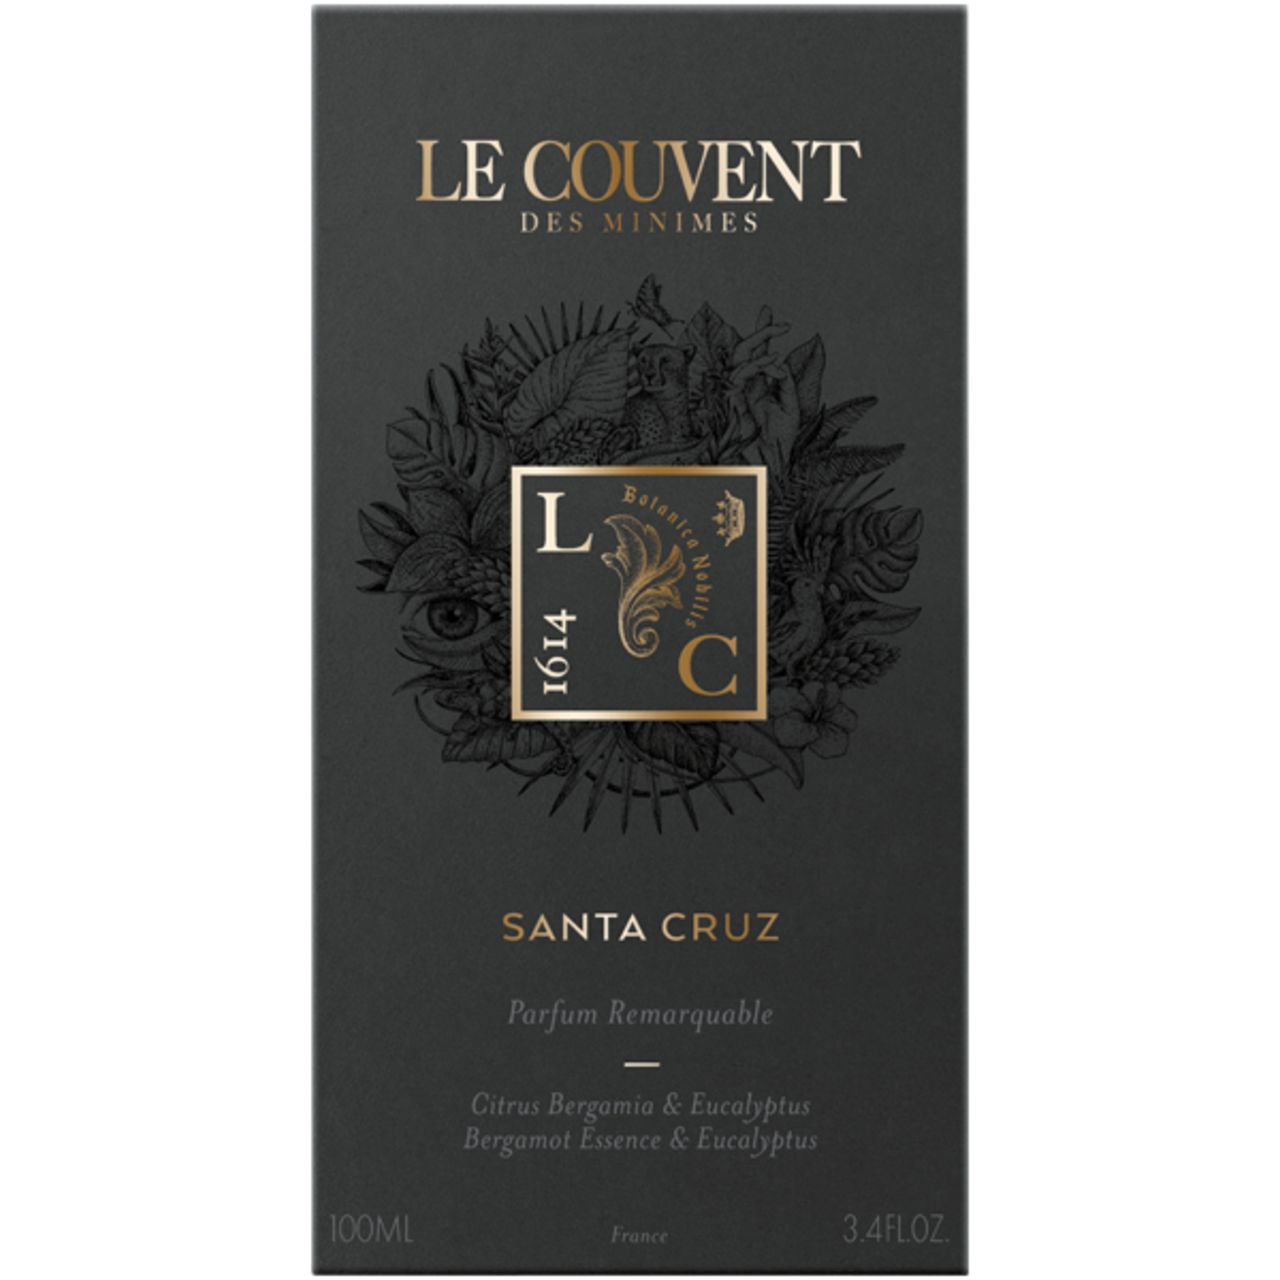 Le Couvent Maison de Parfum Santa Cruz Eau de Parfum